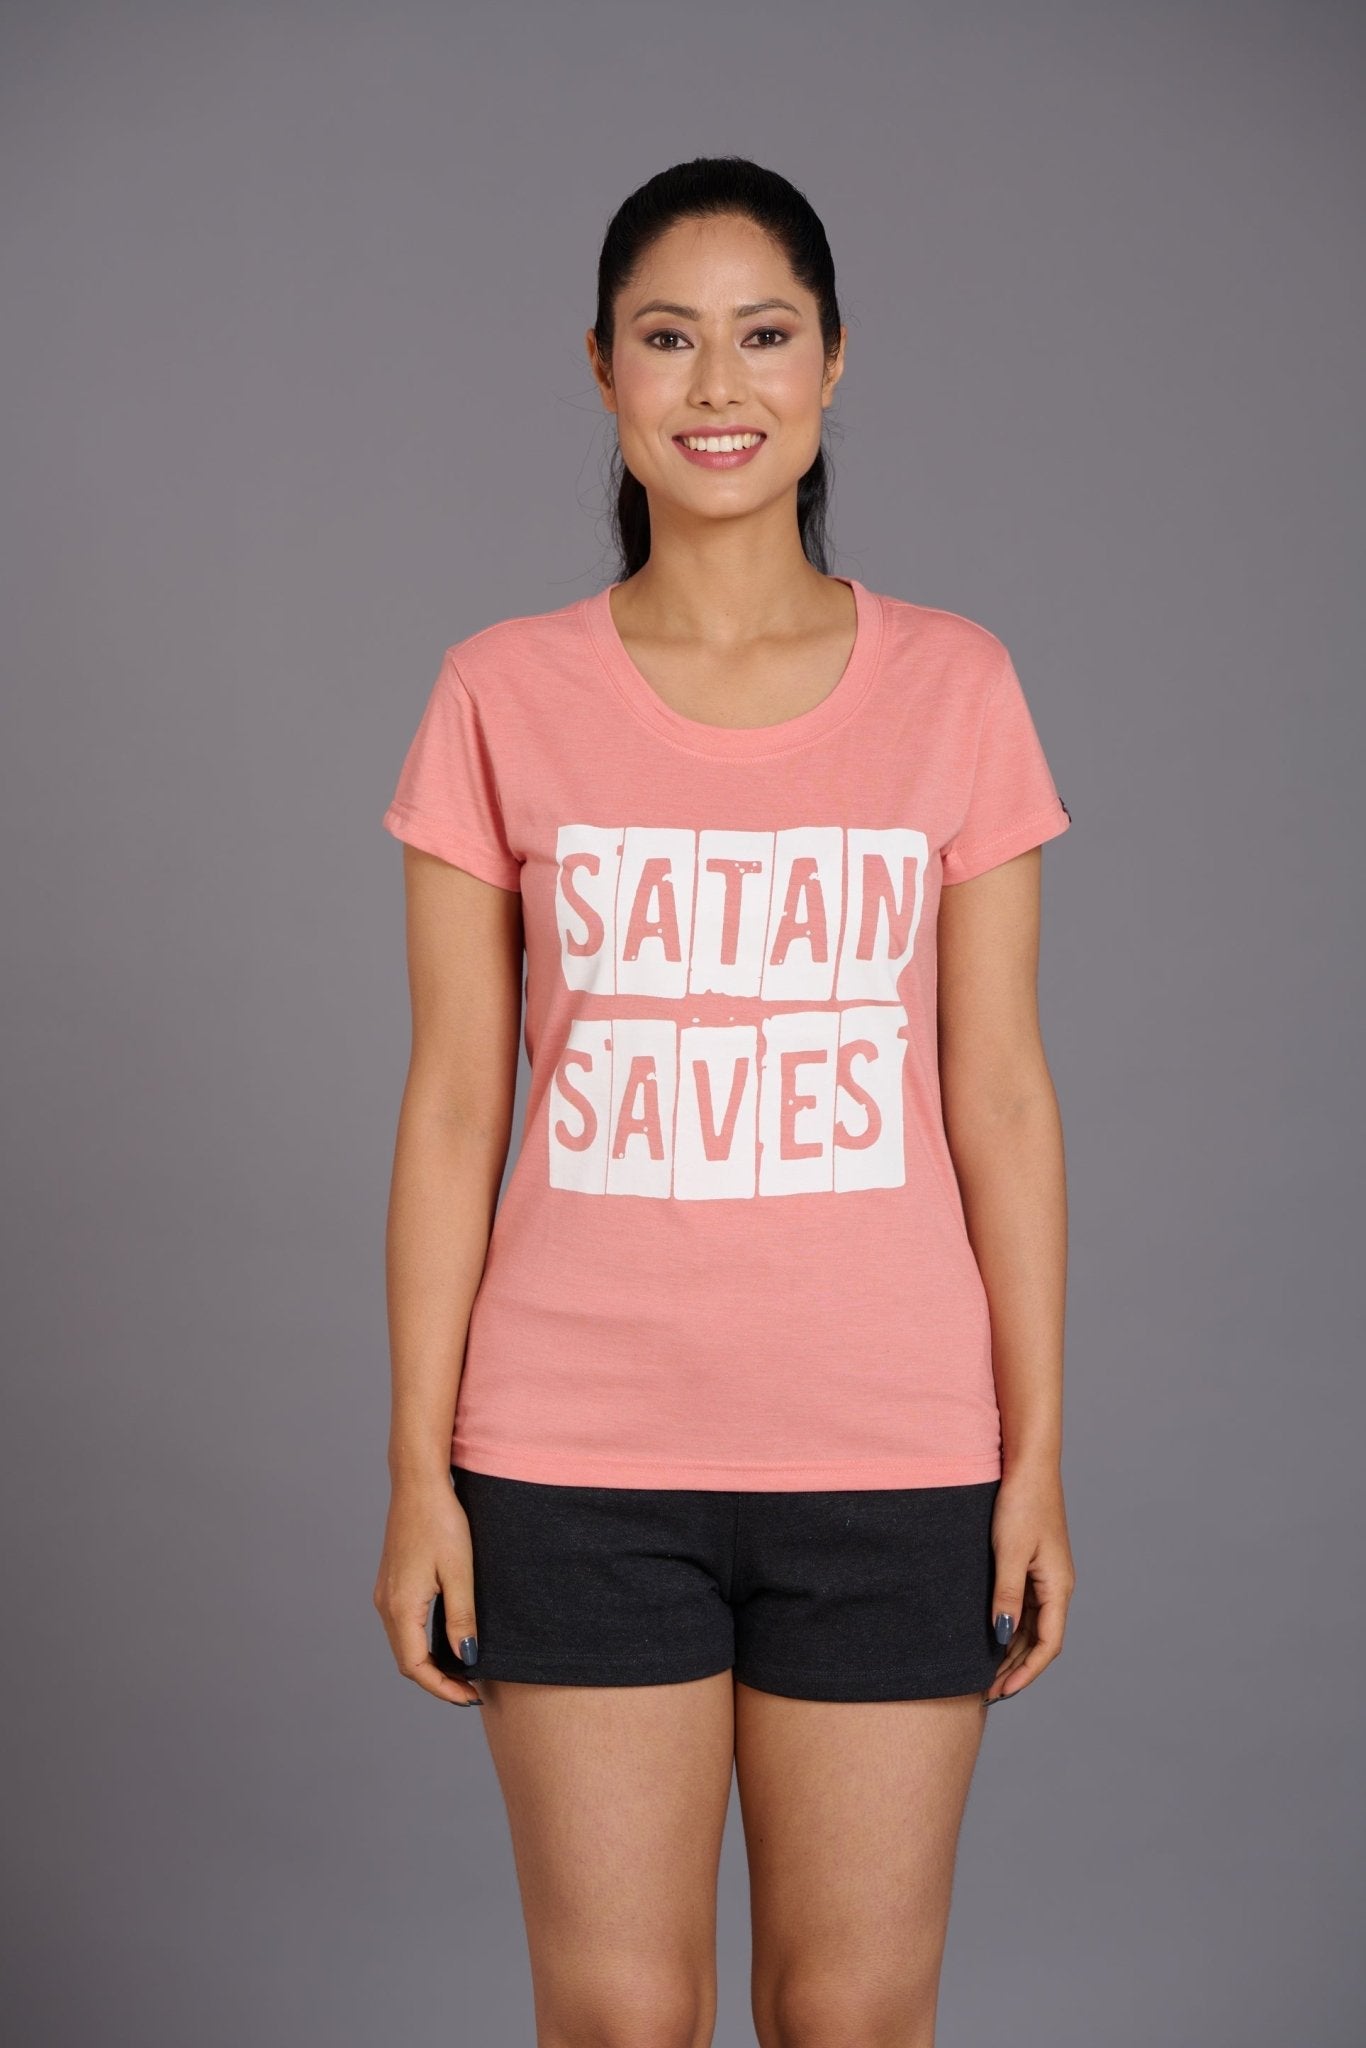 Satan Saves Oversized T-Shirt for Women - Go Devil